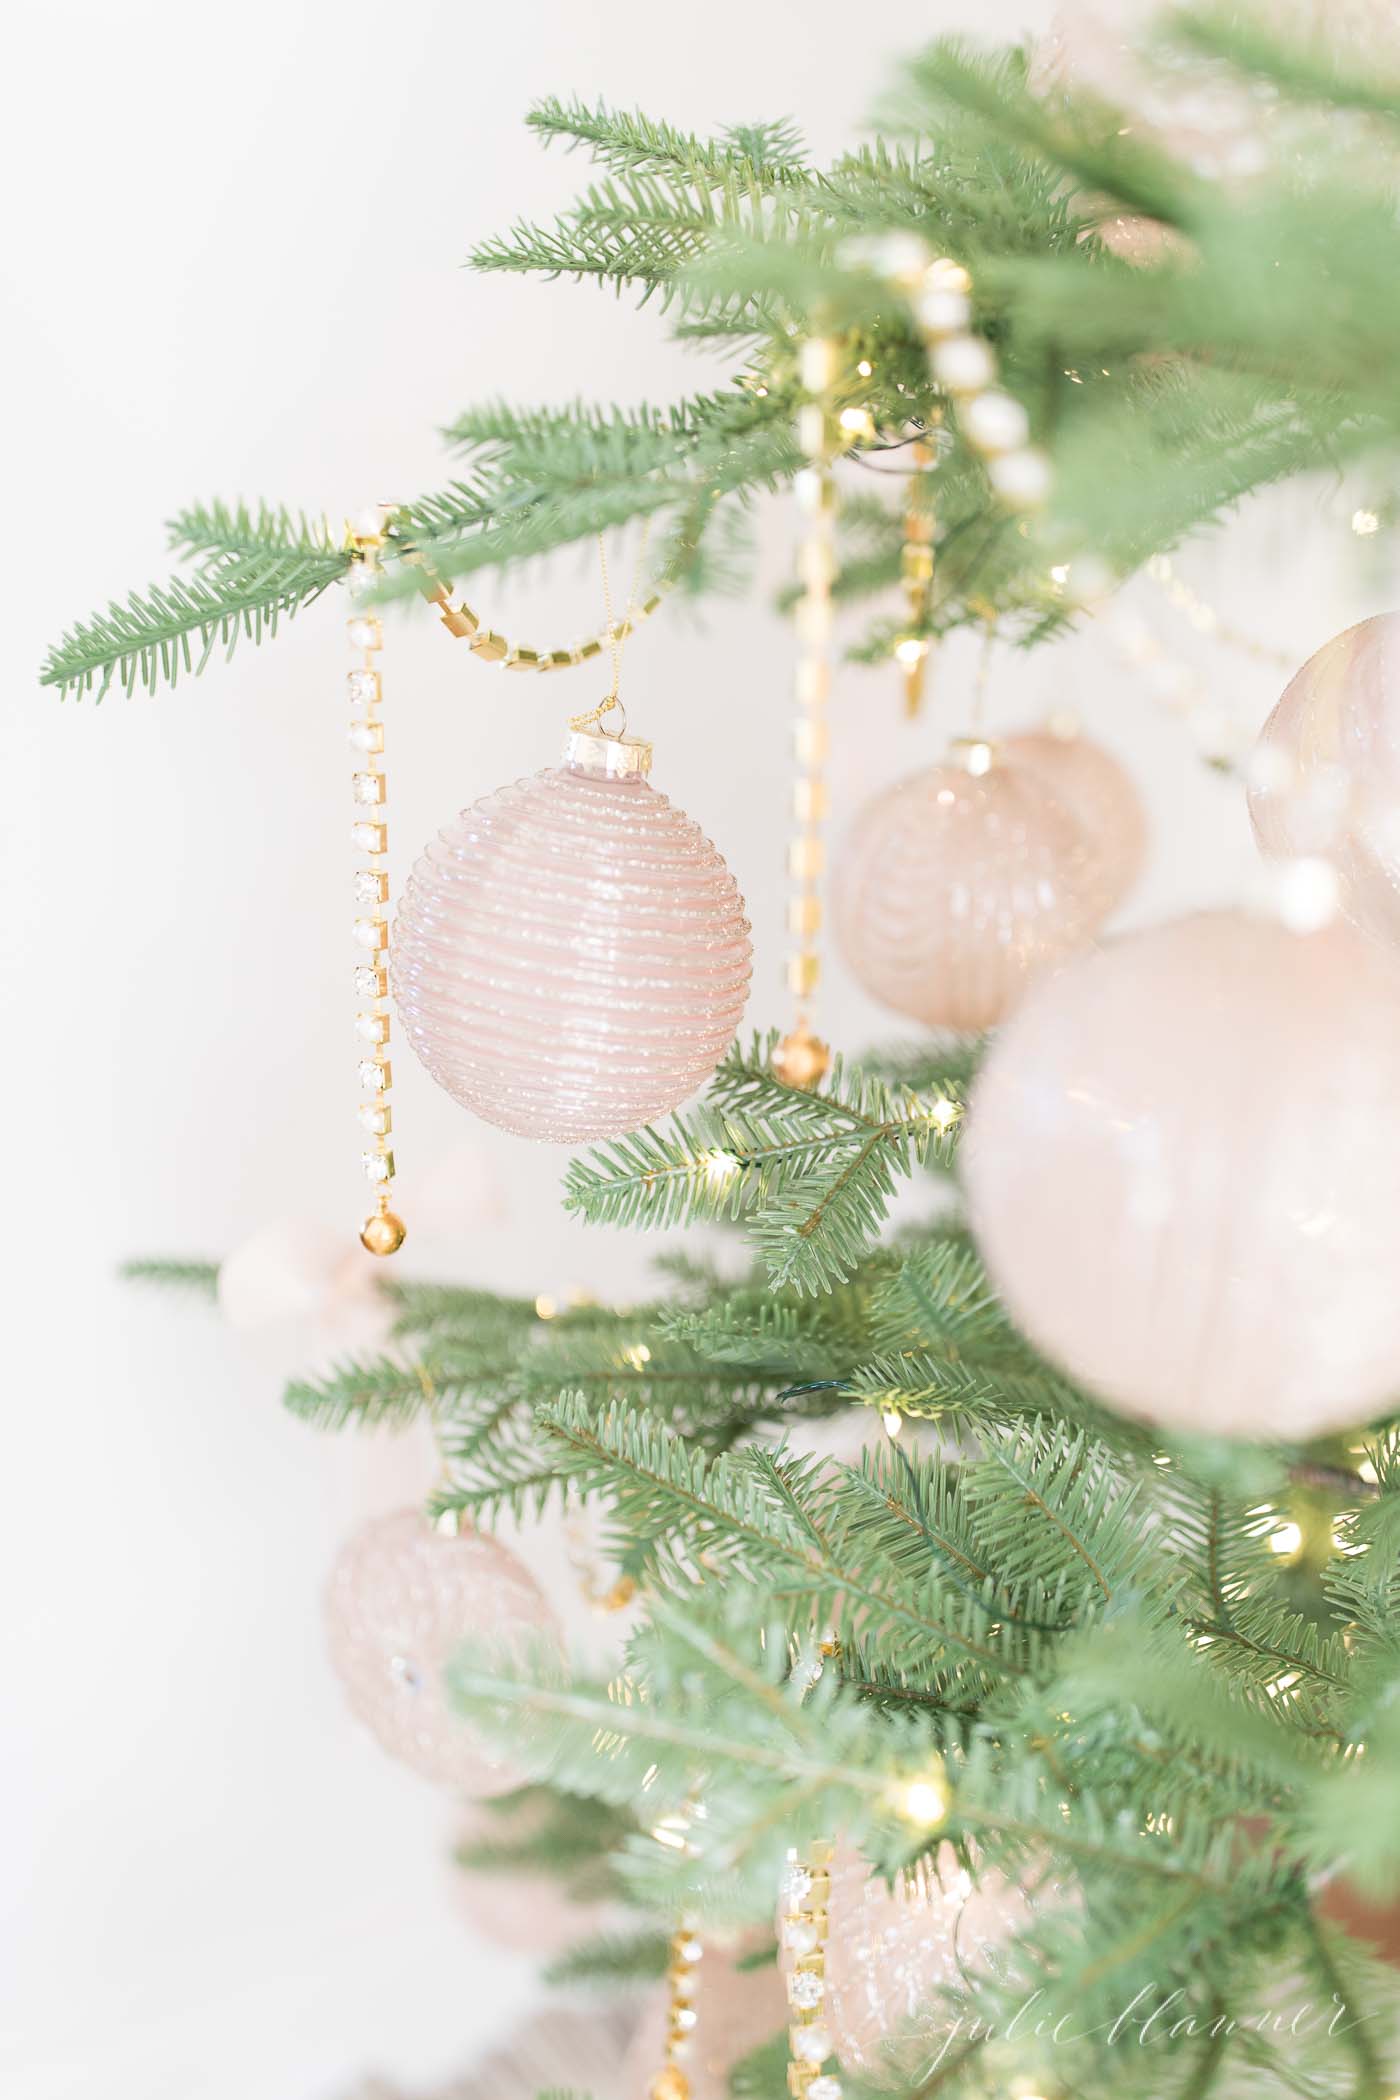 稀疏的圣诞树上装饰着金色和粉色的装饰品